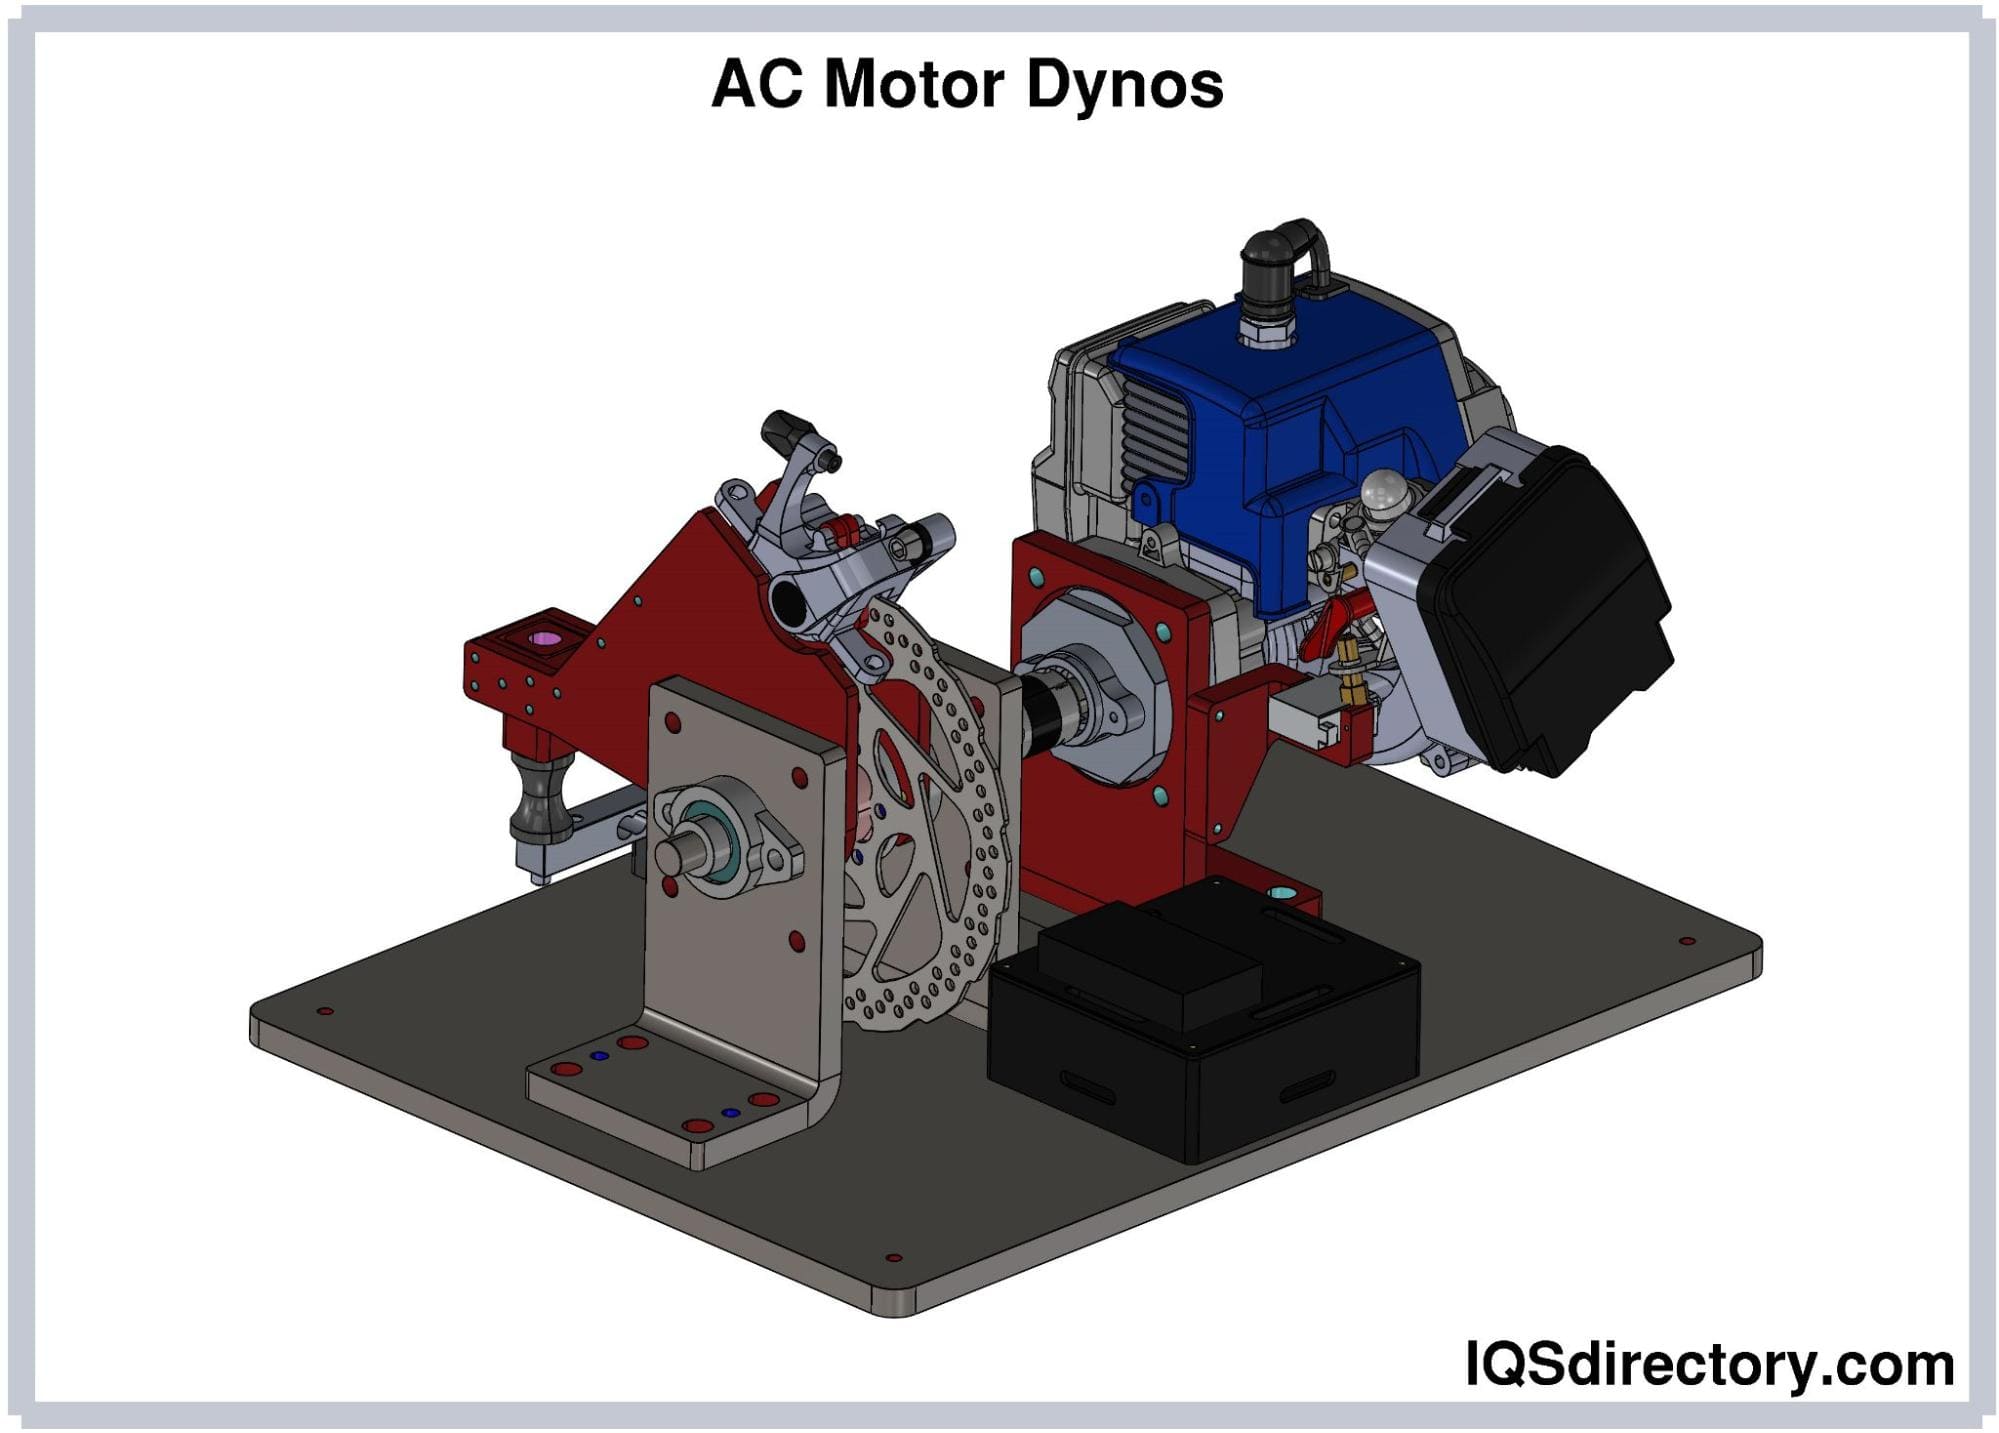 AC Motor Dynos